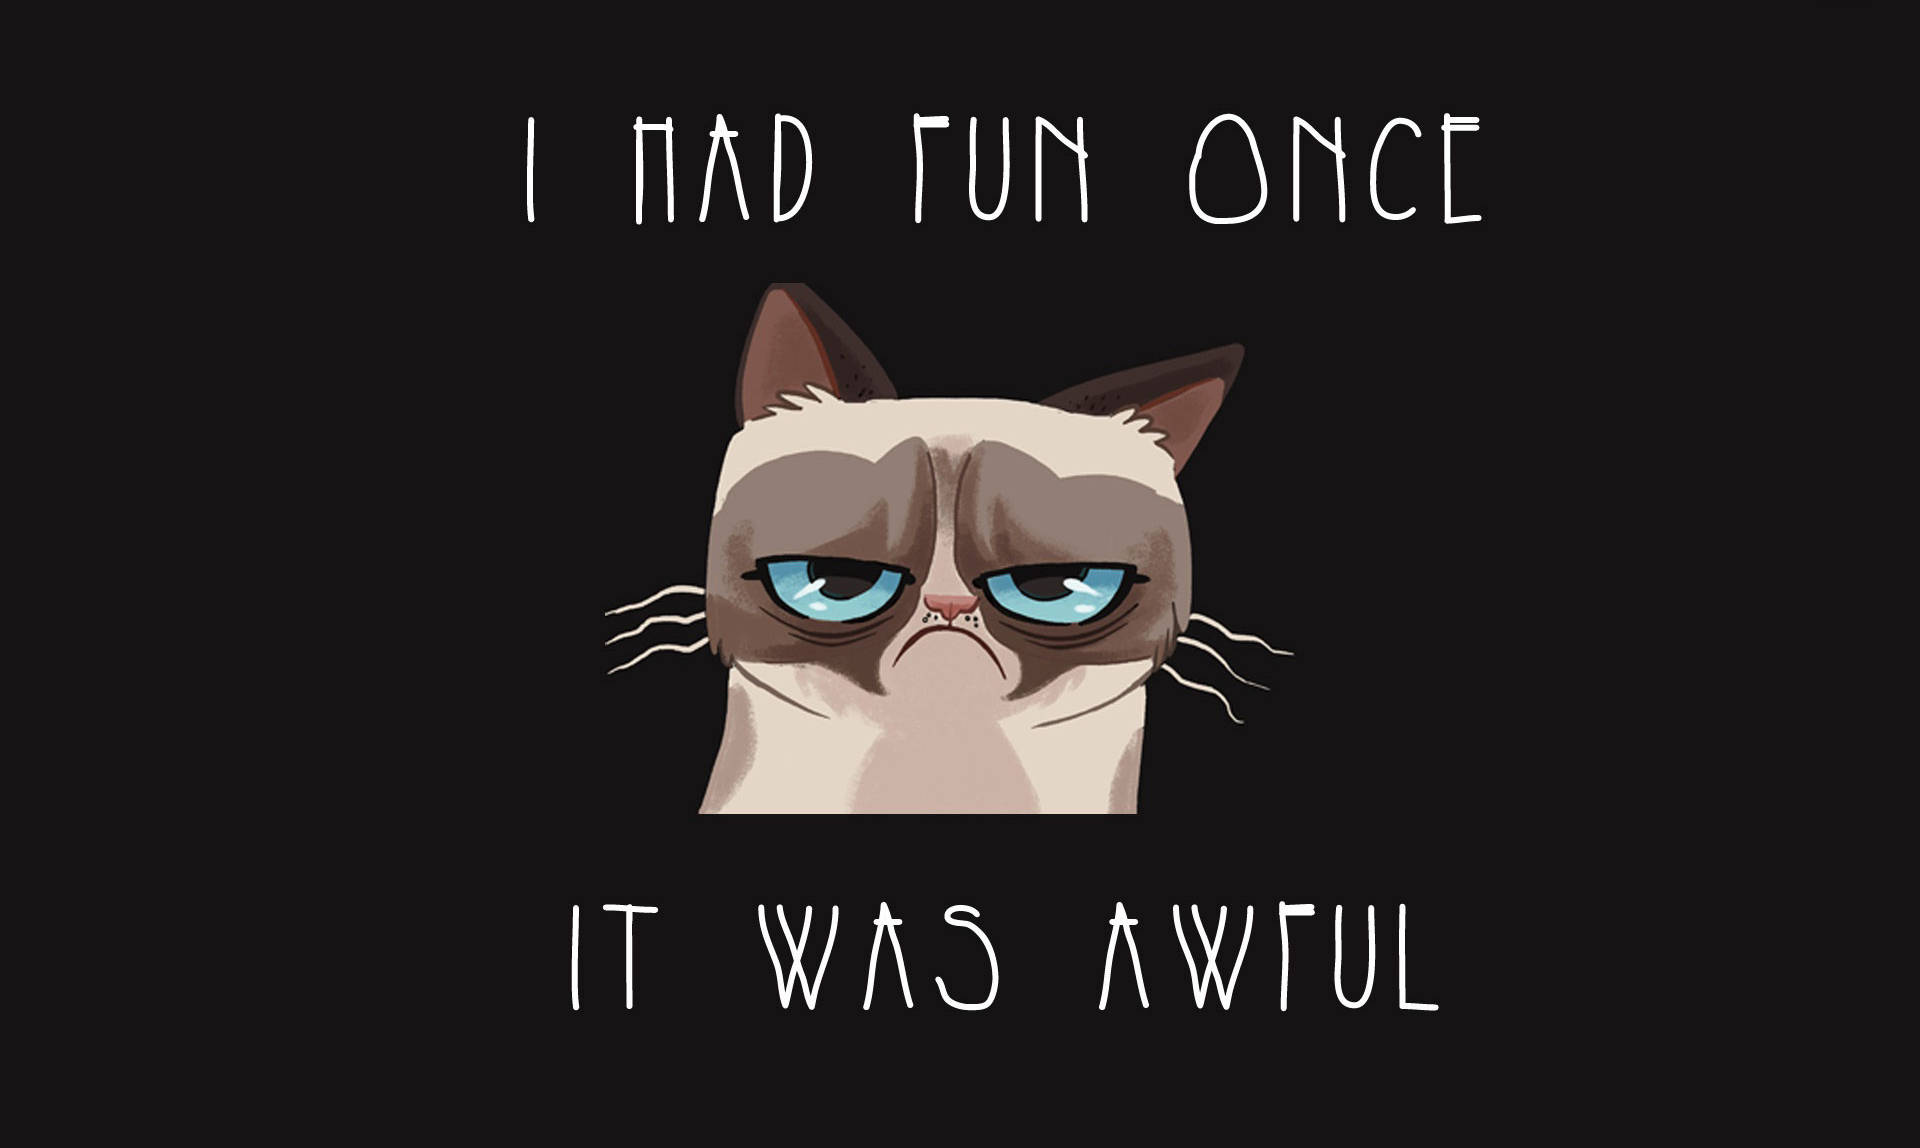 Cartoon Grumpy Cat Meme